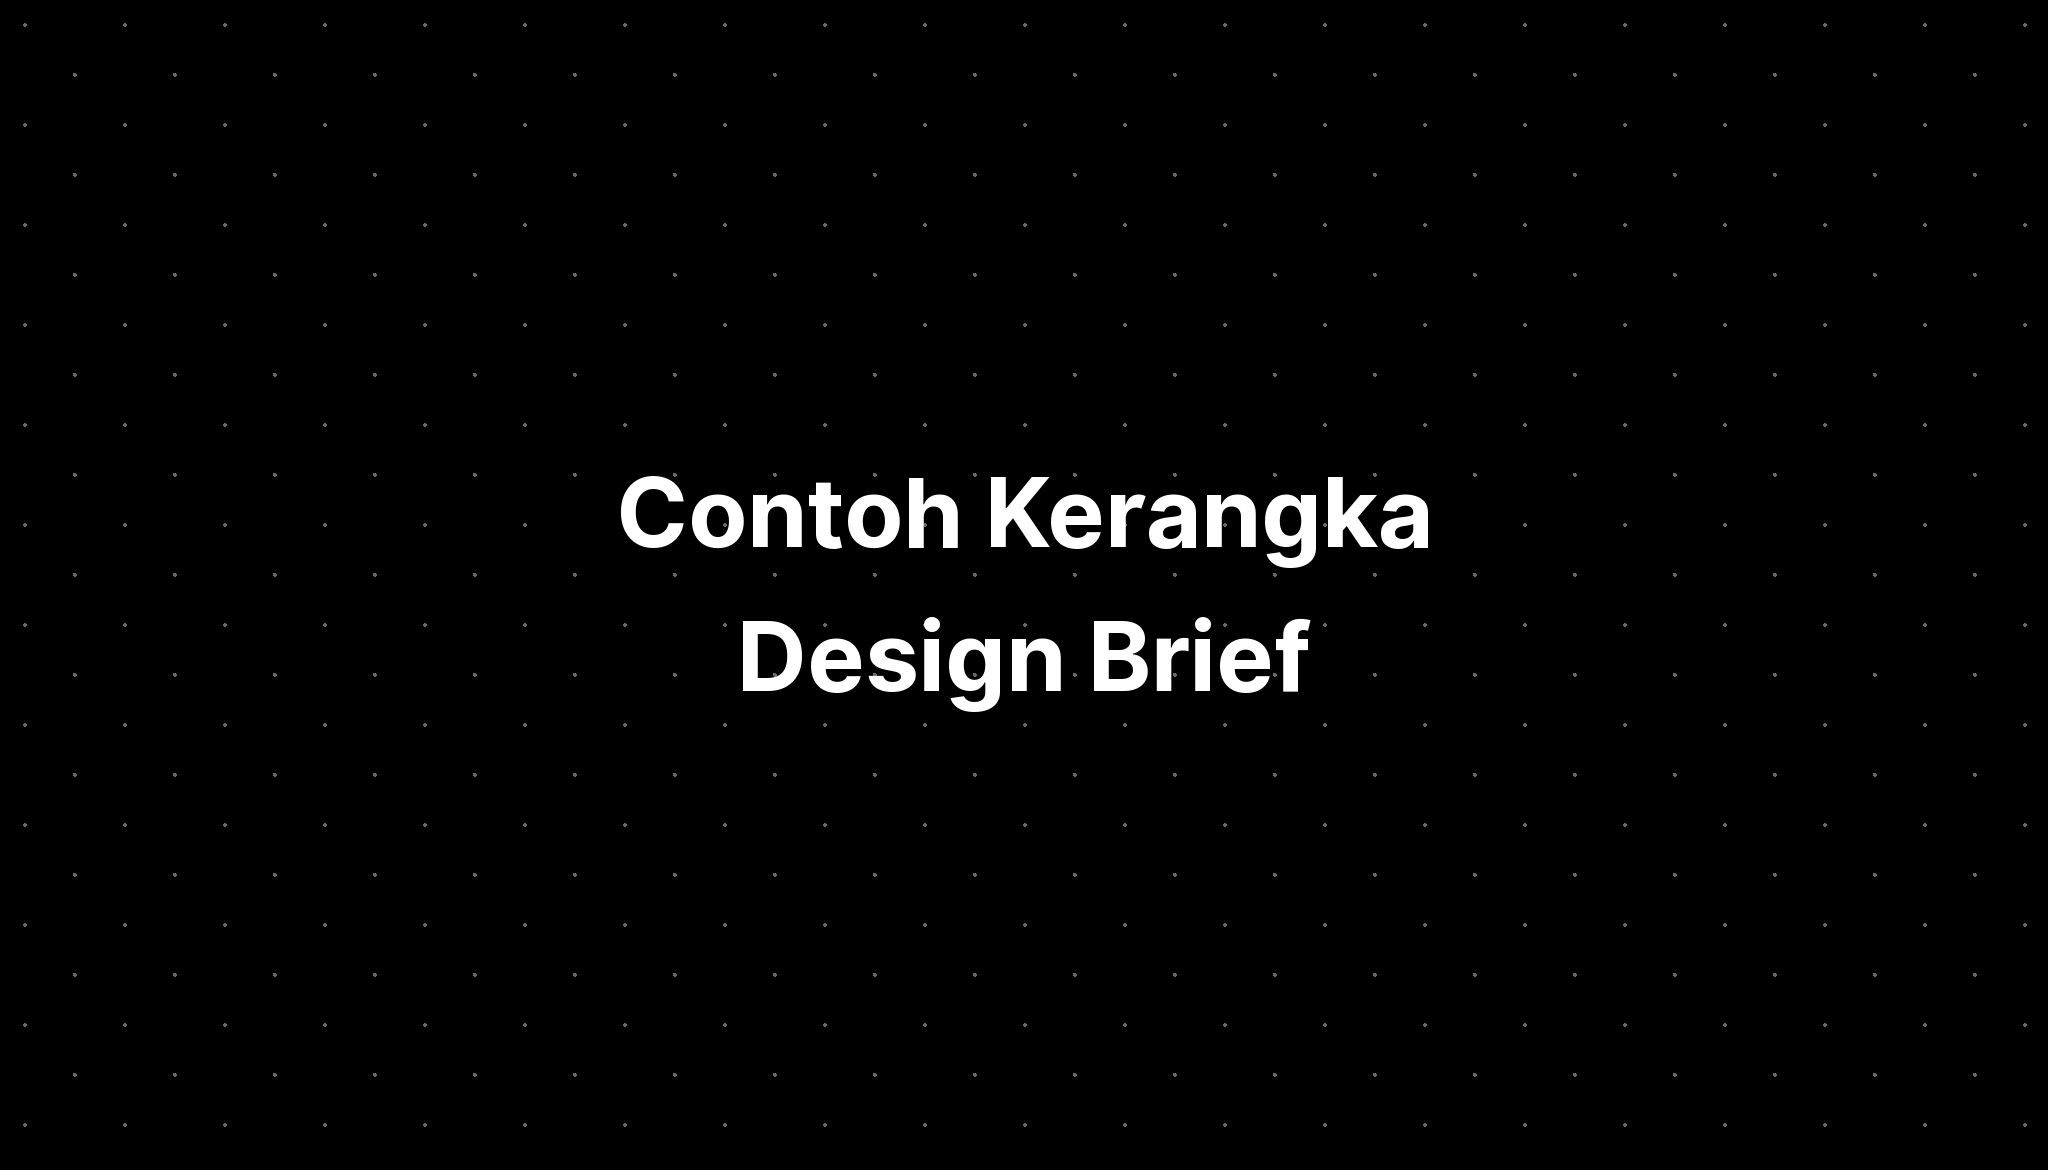 Contoh Kerangka Design Brief Imagesee